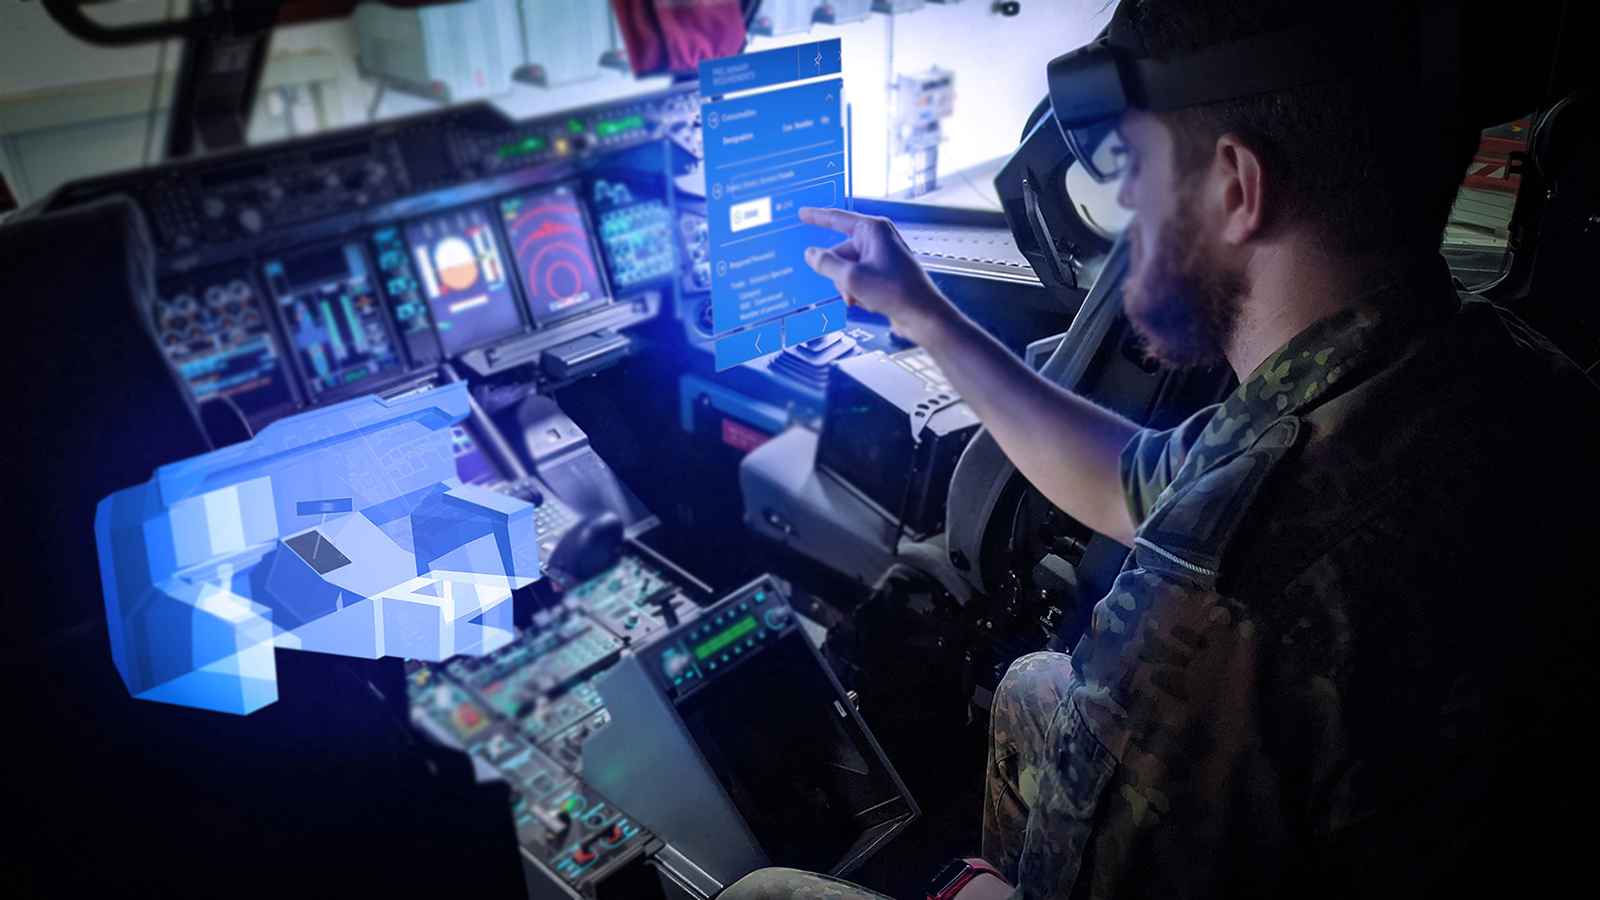 Interaktion mit digitalisierter Wartungsvorschrift zum Einbau einer Bildschirmeinheit im Cockpit des Luftfahrzeugs